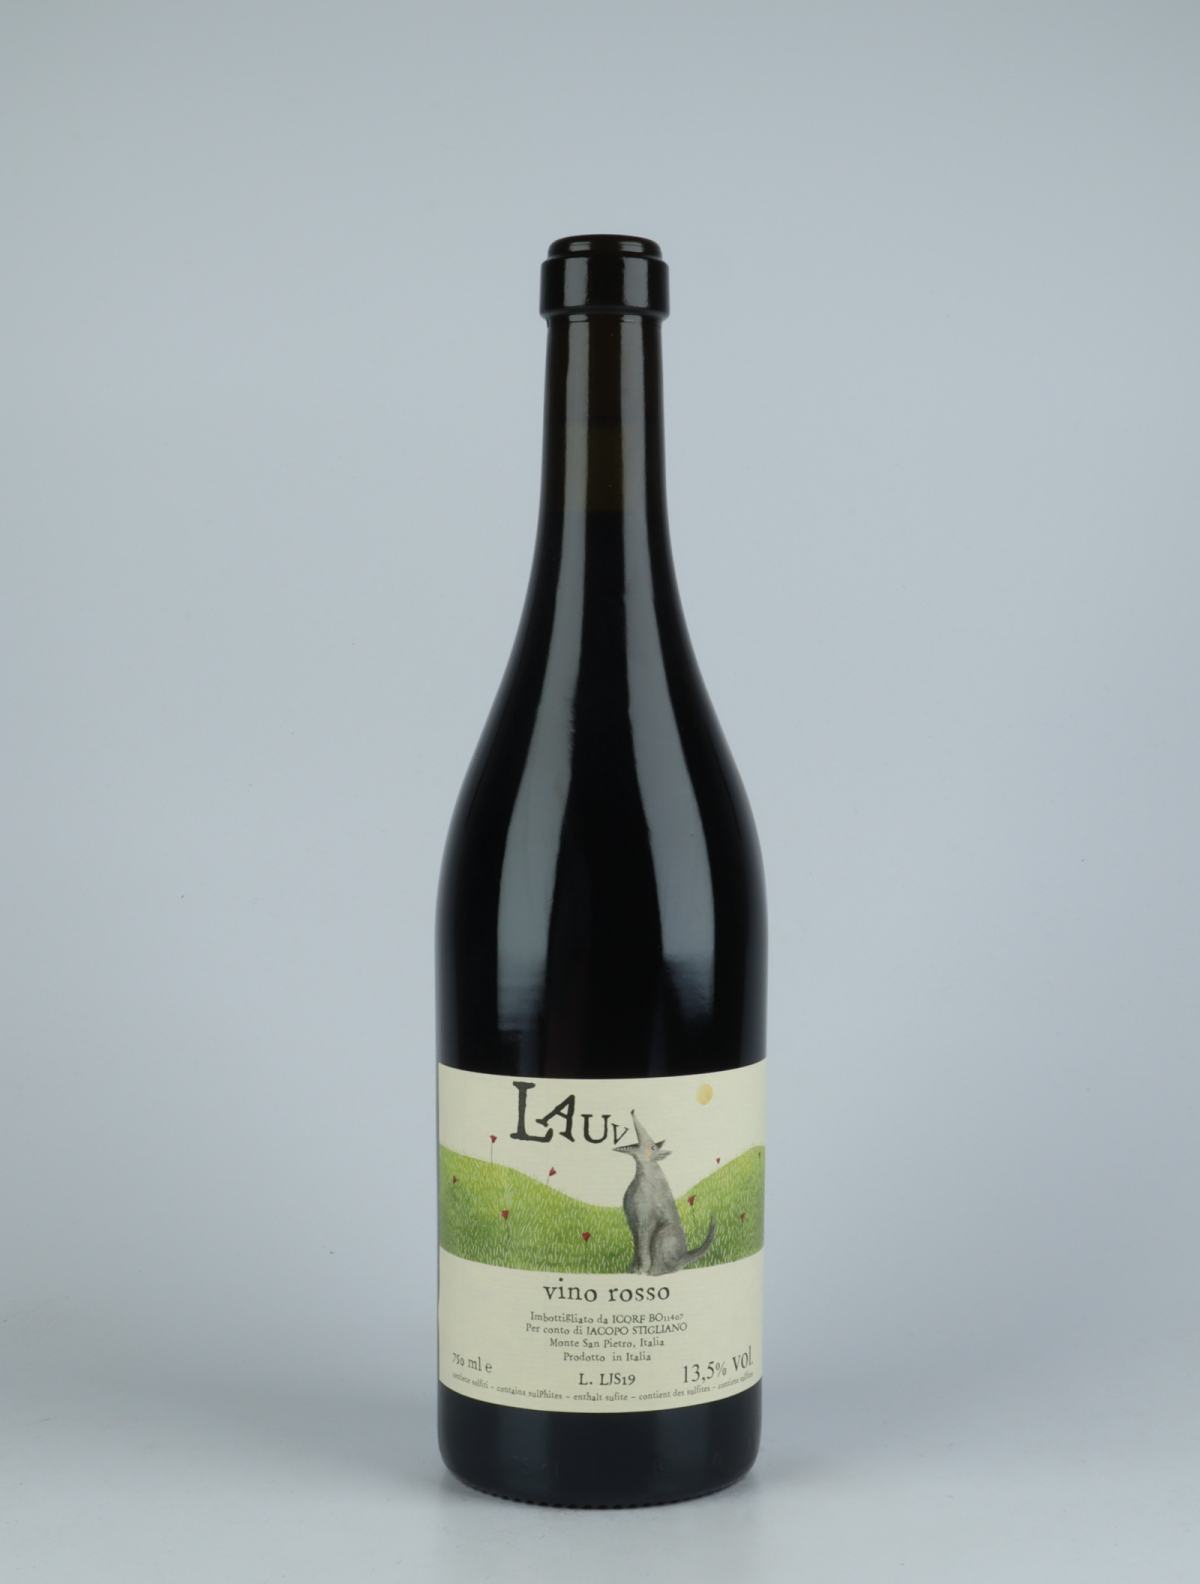 A bottle 2019 Lauv Red wine from Jacopo Stigliano, Emilia-Romagna in Italy